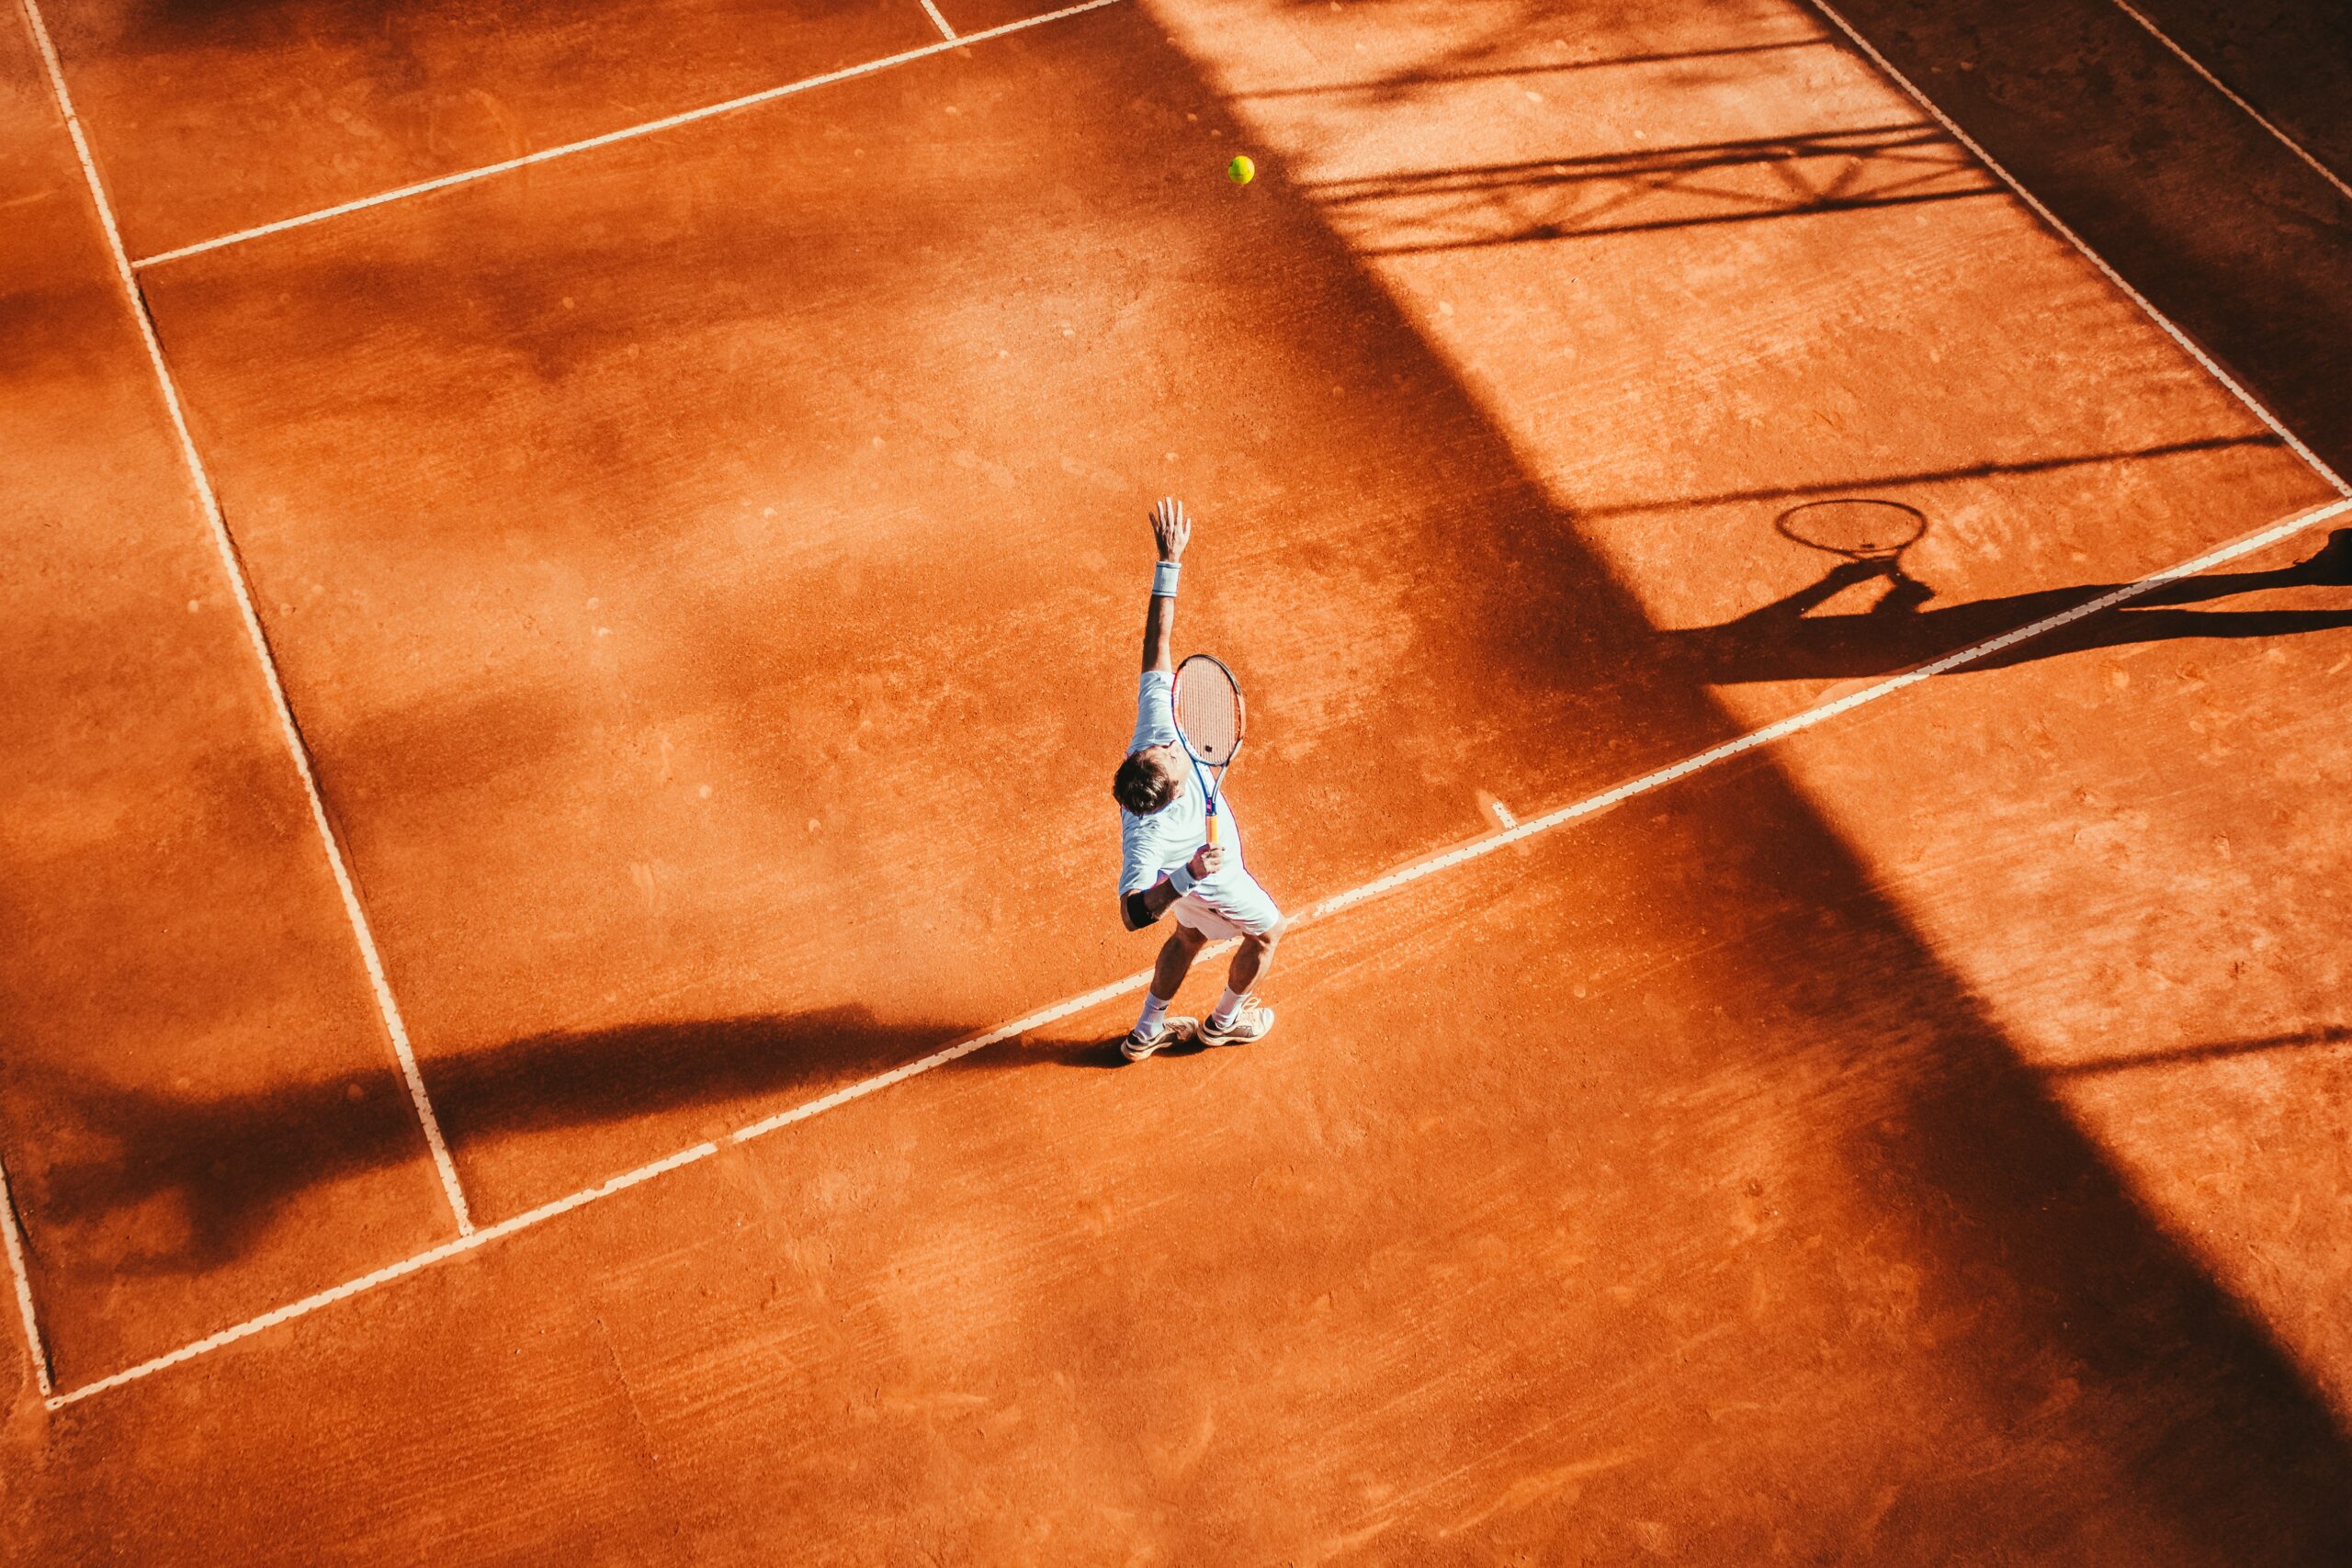 Bruine tennisbaan. Iemand op de tennisbaan serveert een tennisbal. Tennisracket is in de lucht. Tennisbaan in Schiedam.